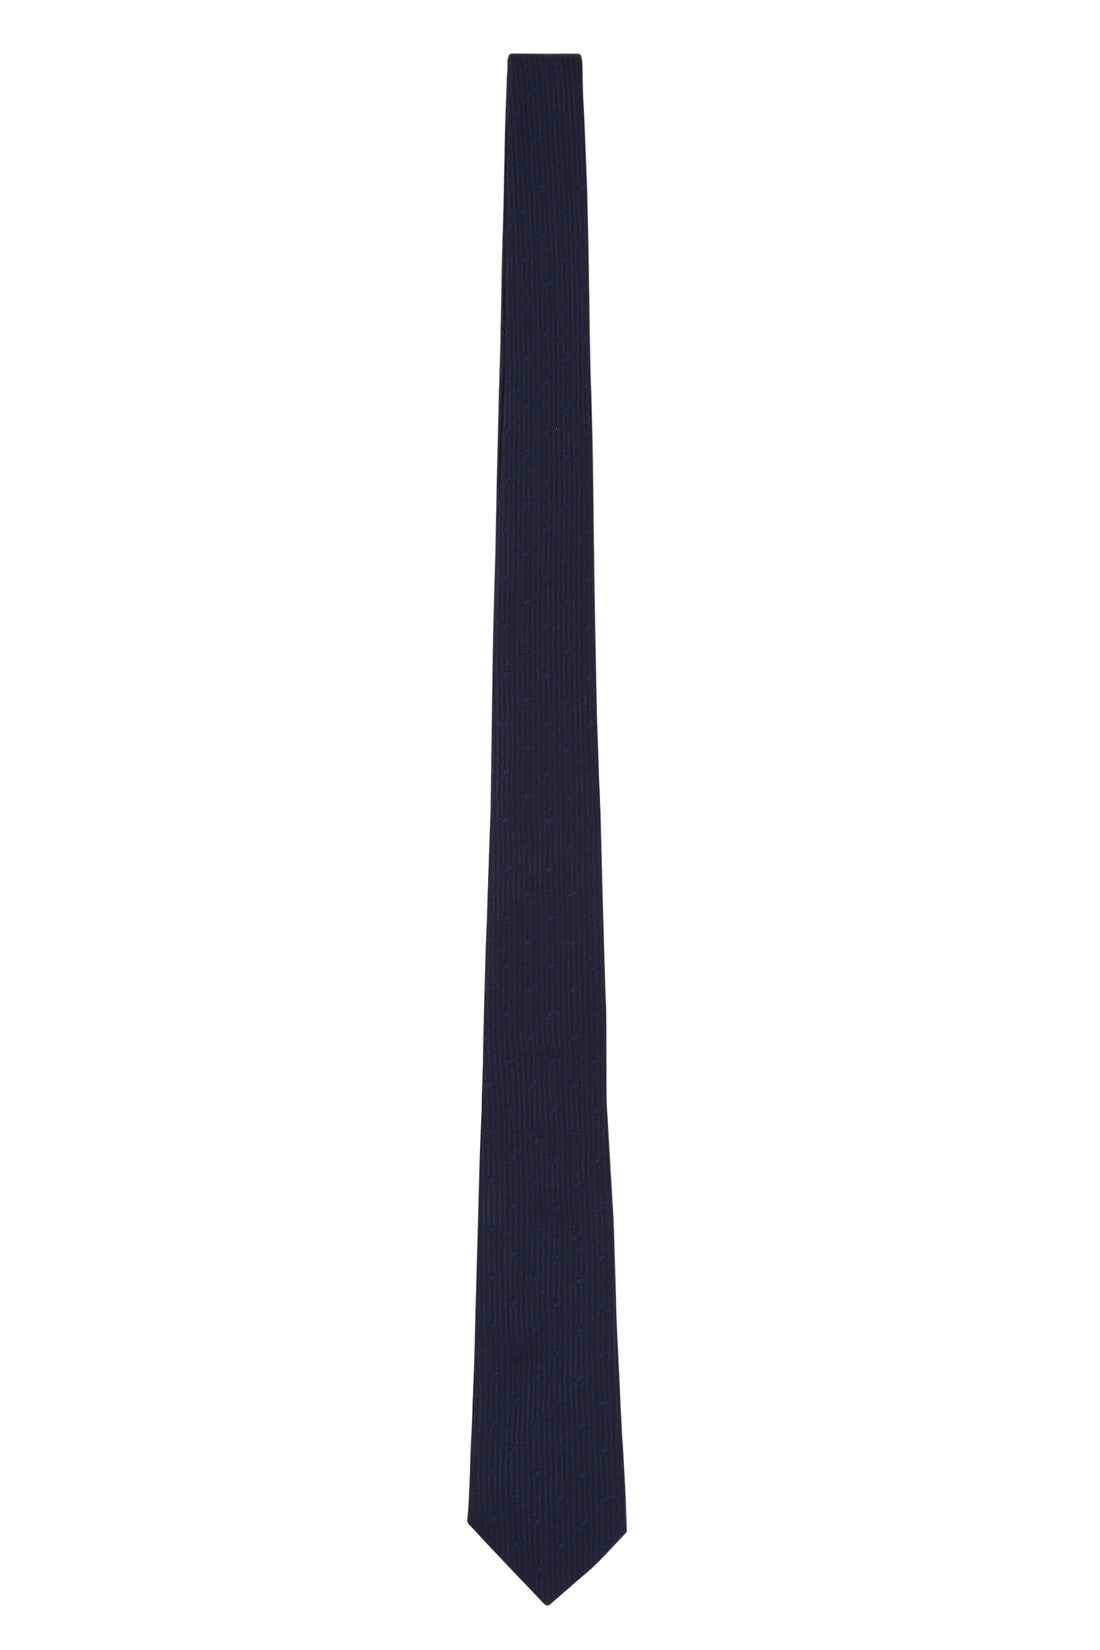 Emporio Armani Woven Tie Style: 409552